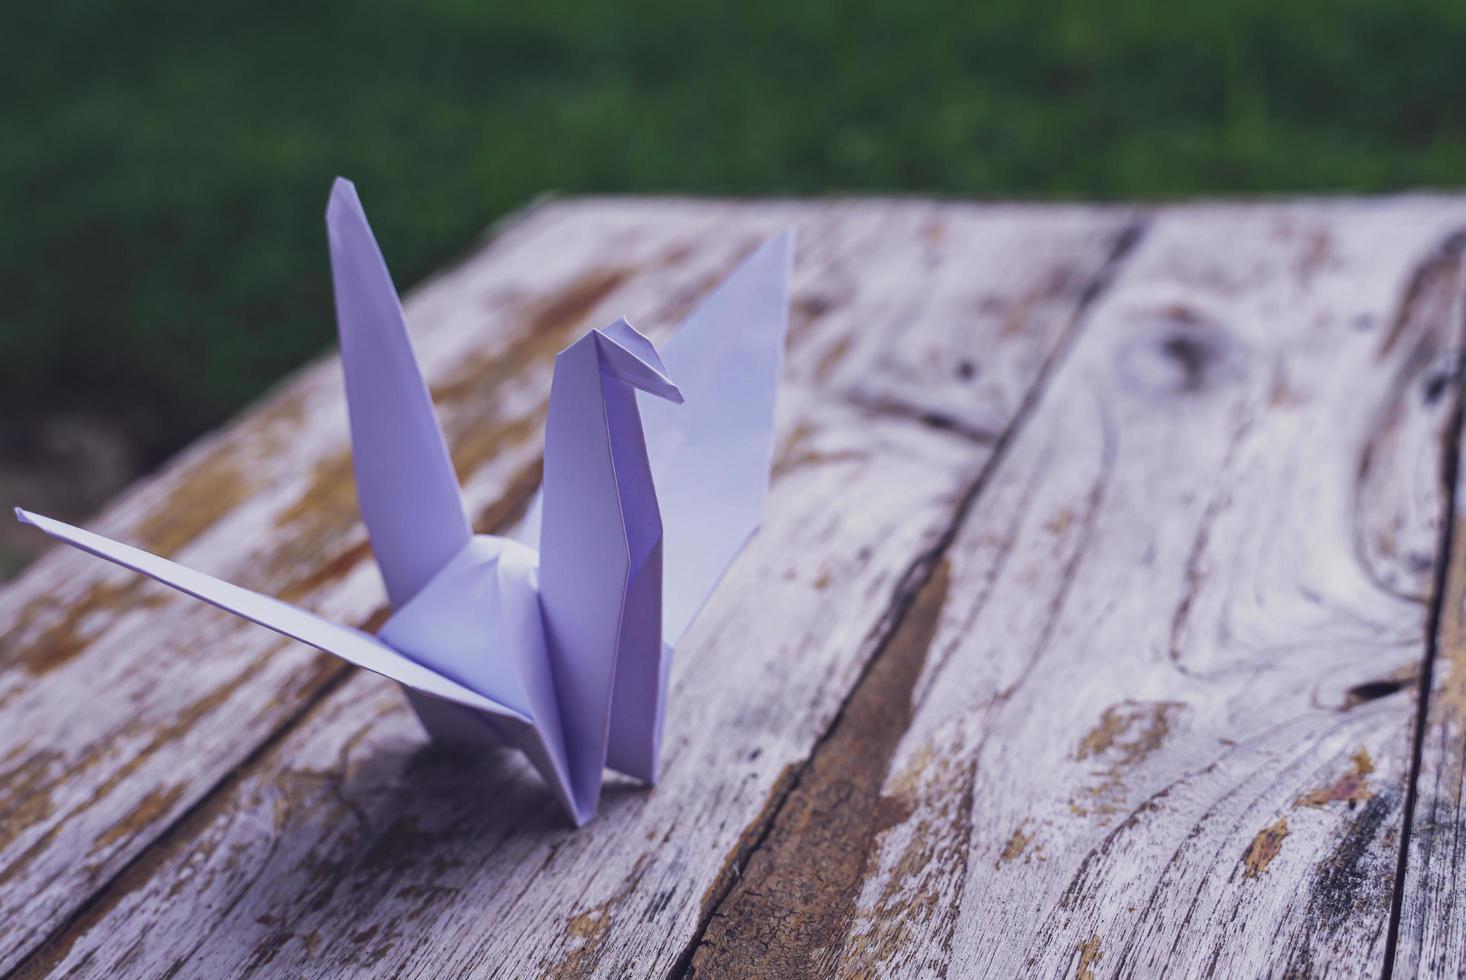 se cree que el pájaro de origami es un pájaro sagrado y un símbolo de longevidad, esperanza, buena suerte y paz foto